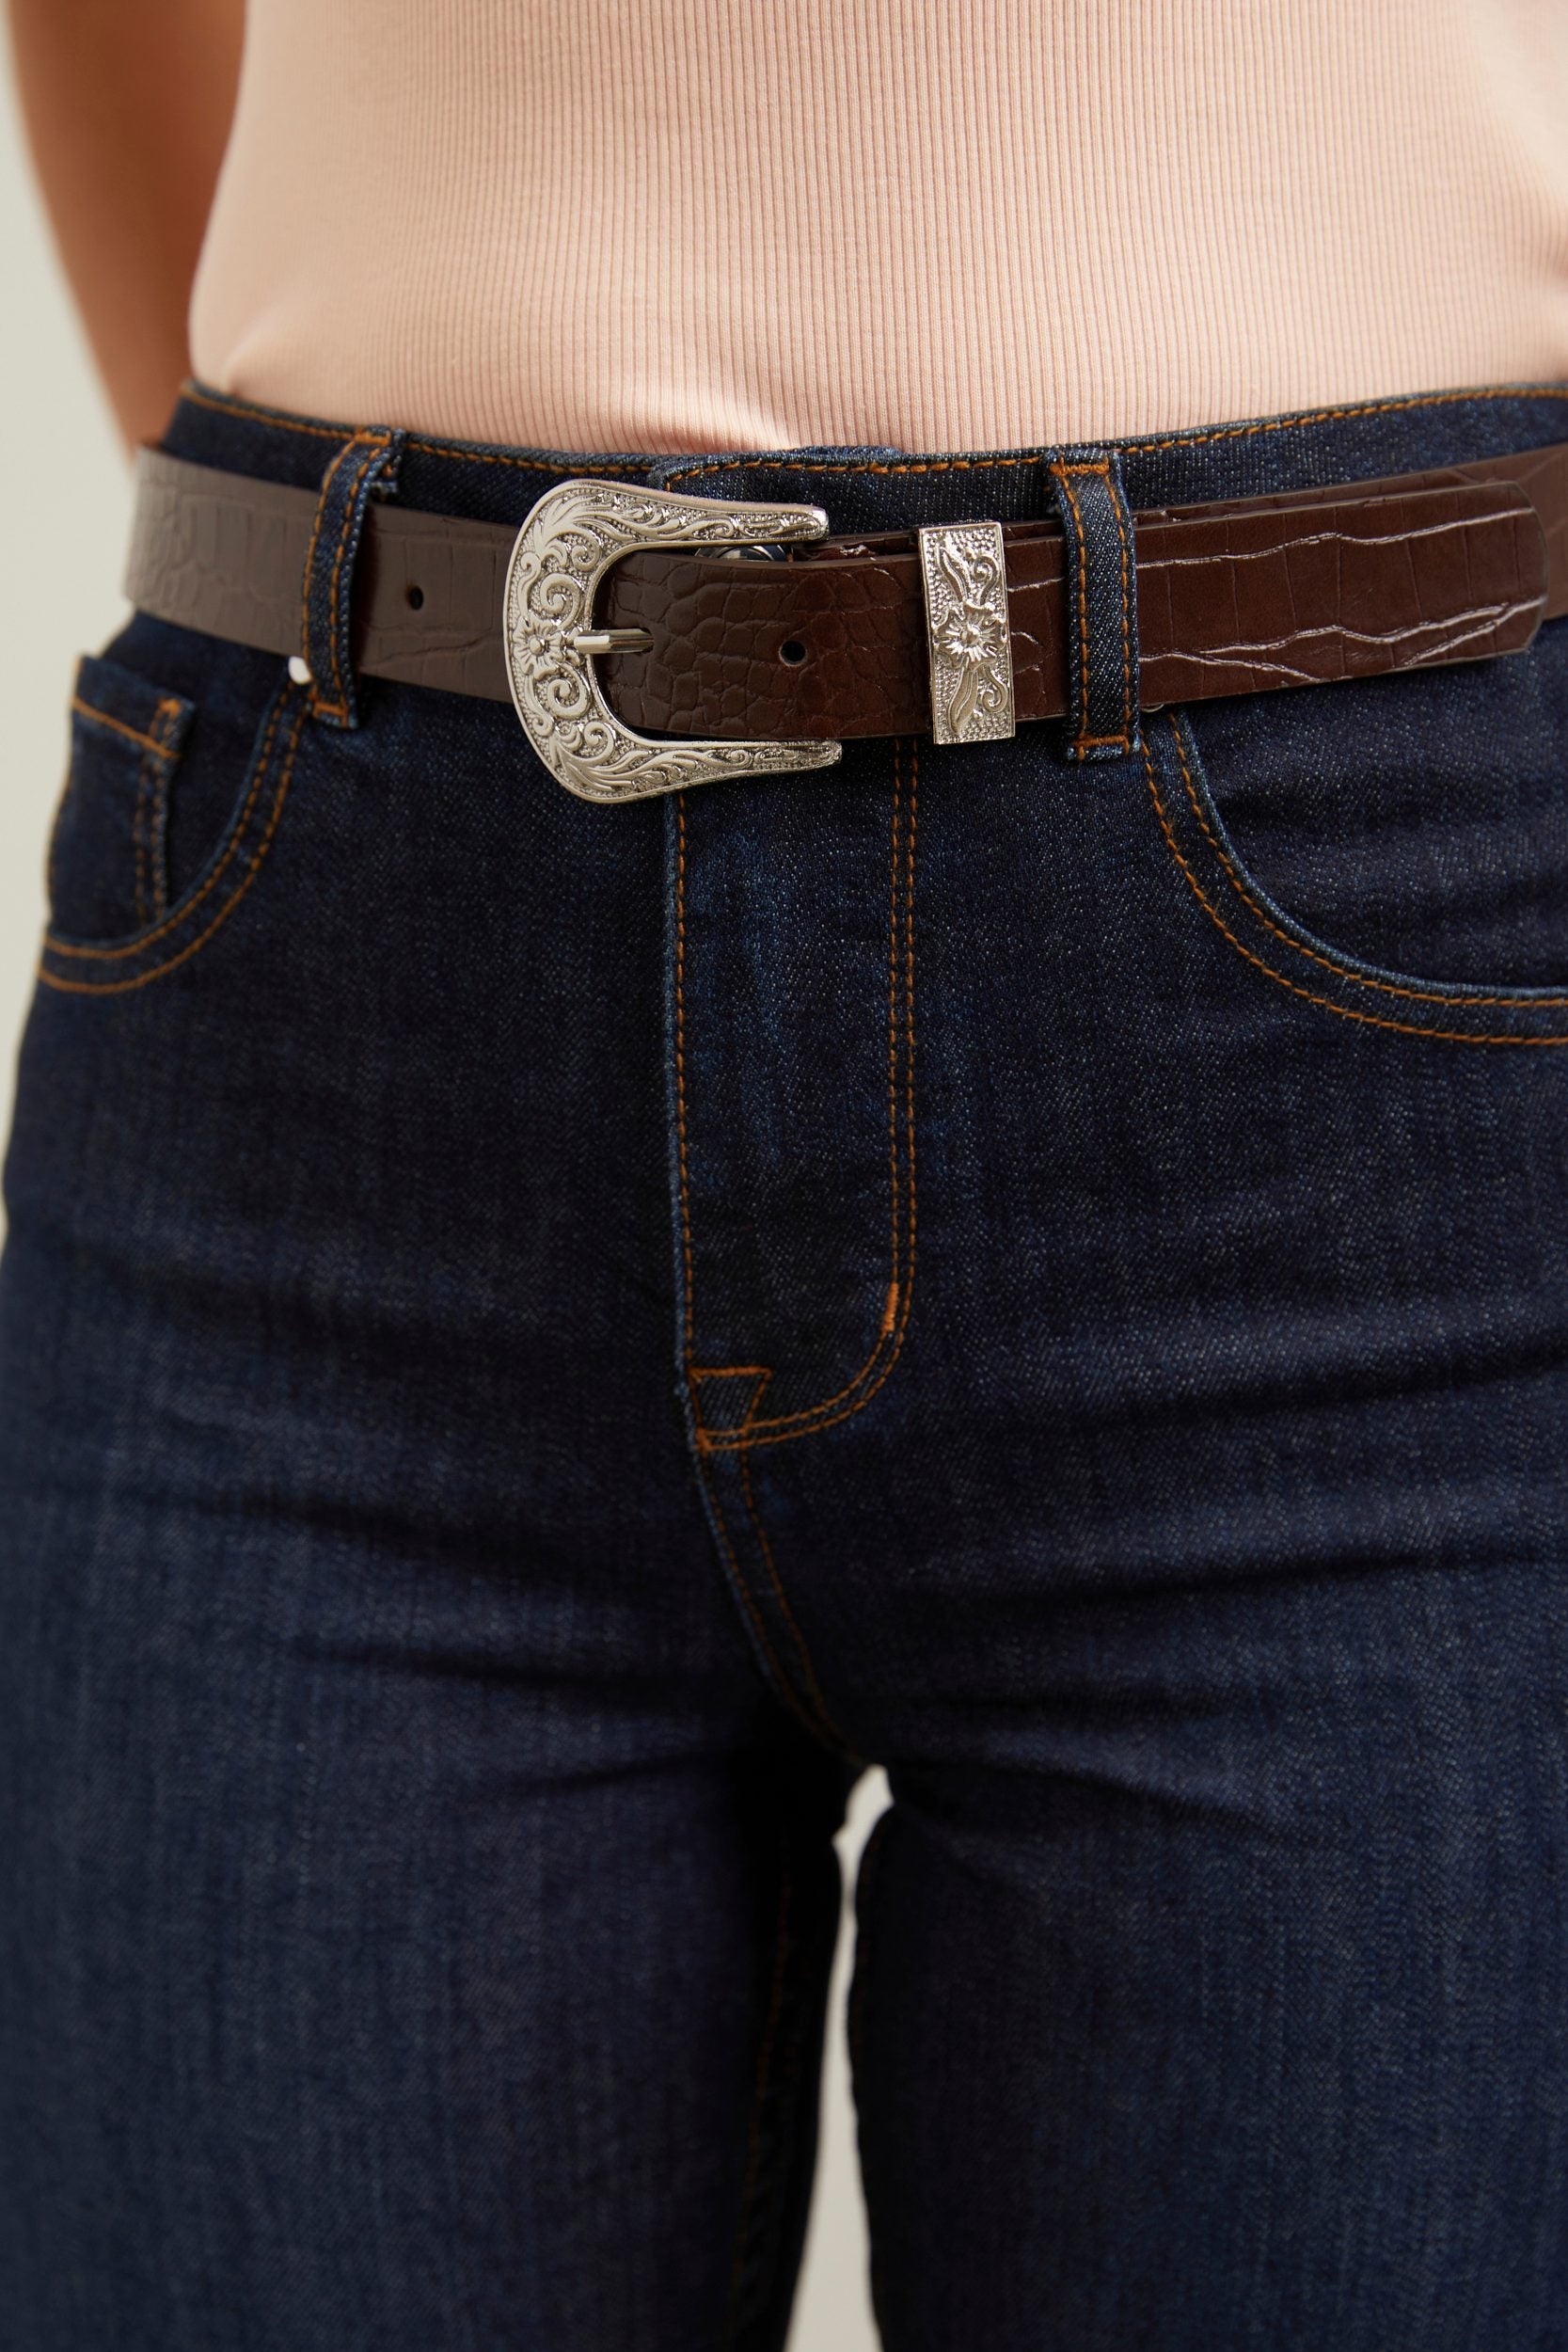 Engraved buckle belt